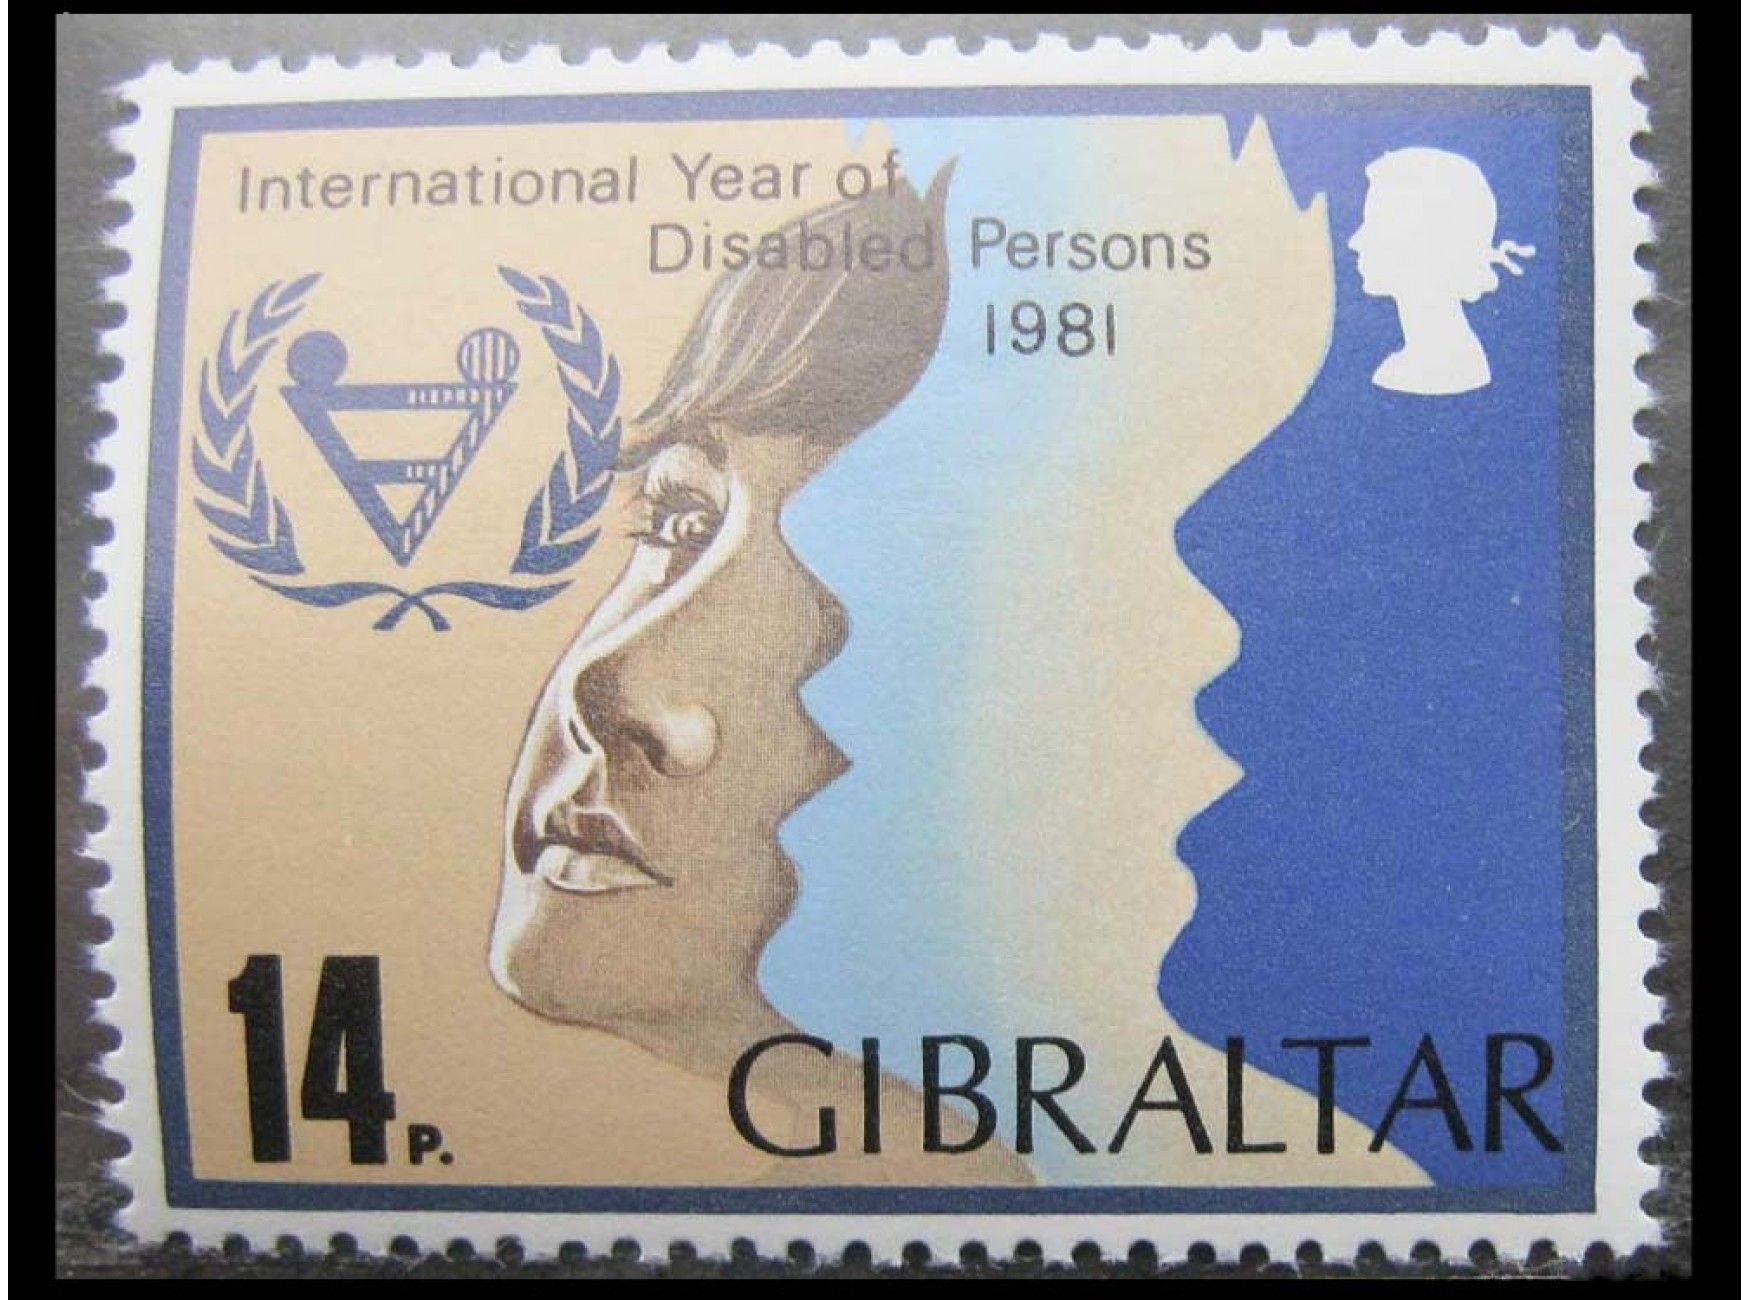 1981 год какая страна. Почтовые марки Гибралтар по годам. 1981 Год инвалидов. Марка internationales Jahr der Geschadigten 1981 год. Пойан марка.